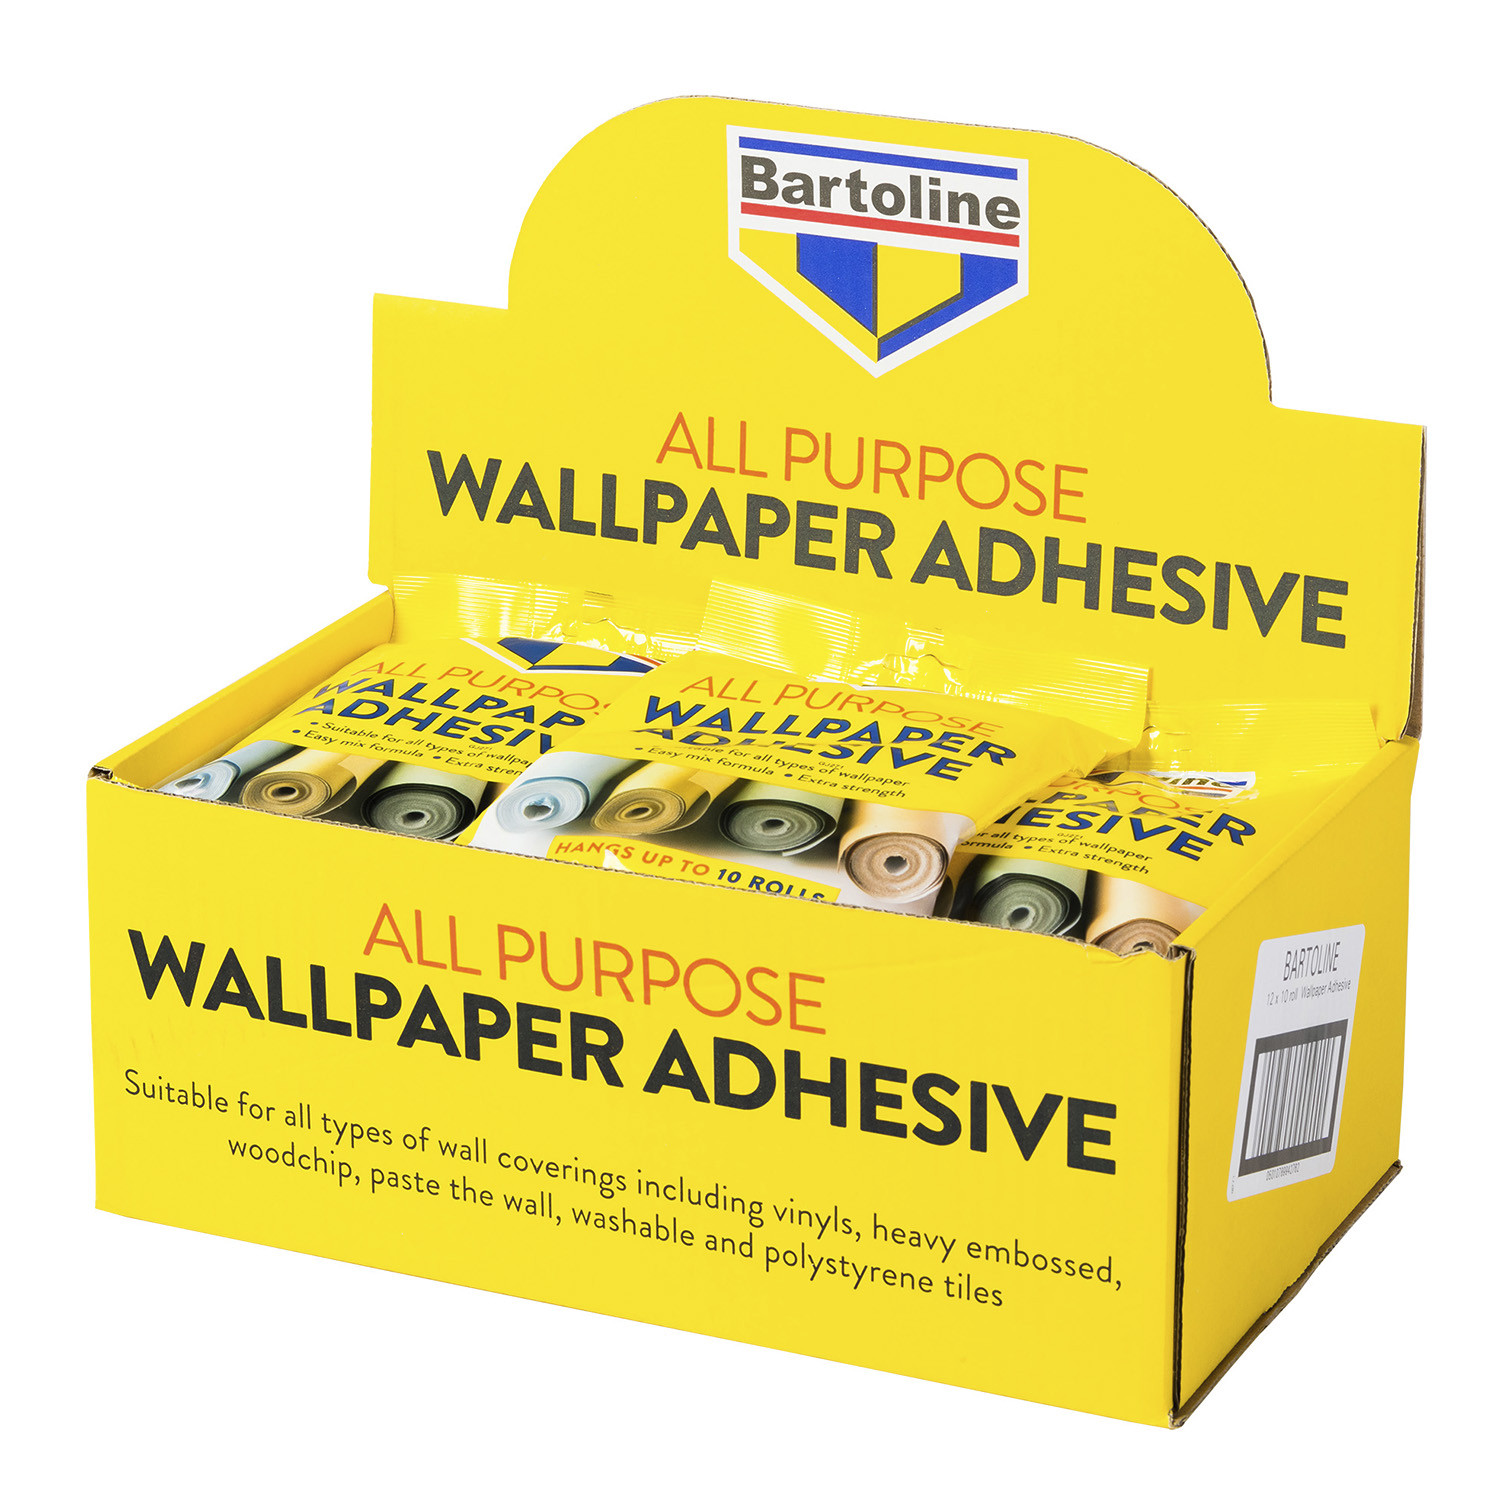 Bartoline All Purpose Wallpaper Adhesive Sachet 95g Image